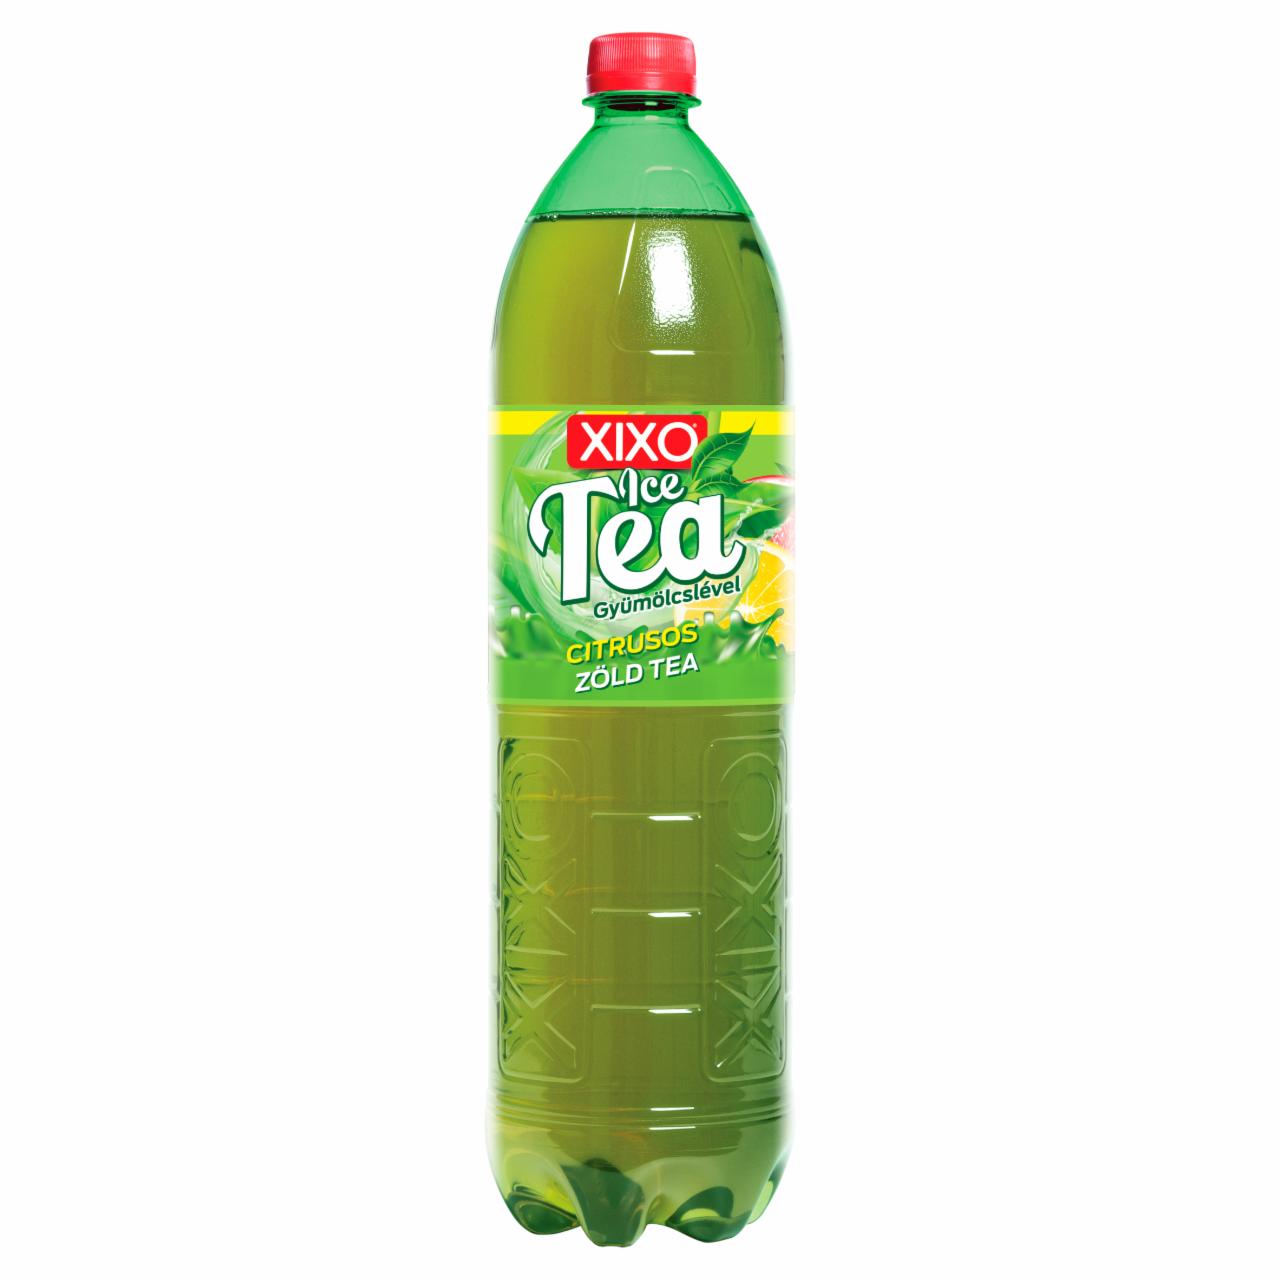 Képek - XIXO Ice Tea citrusos zöld tea 1,5 l